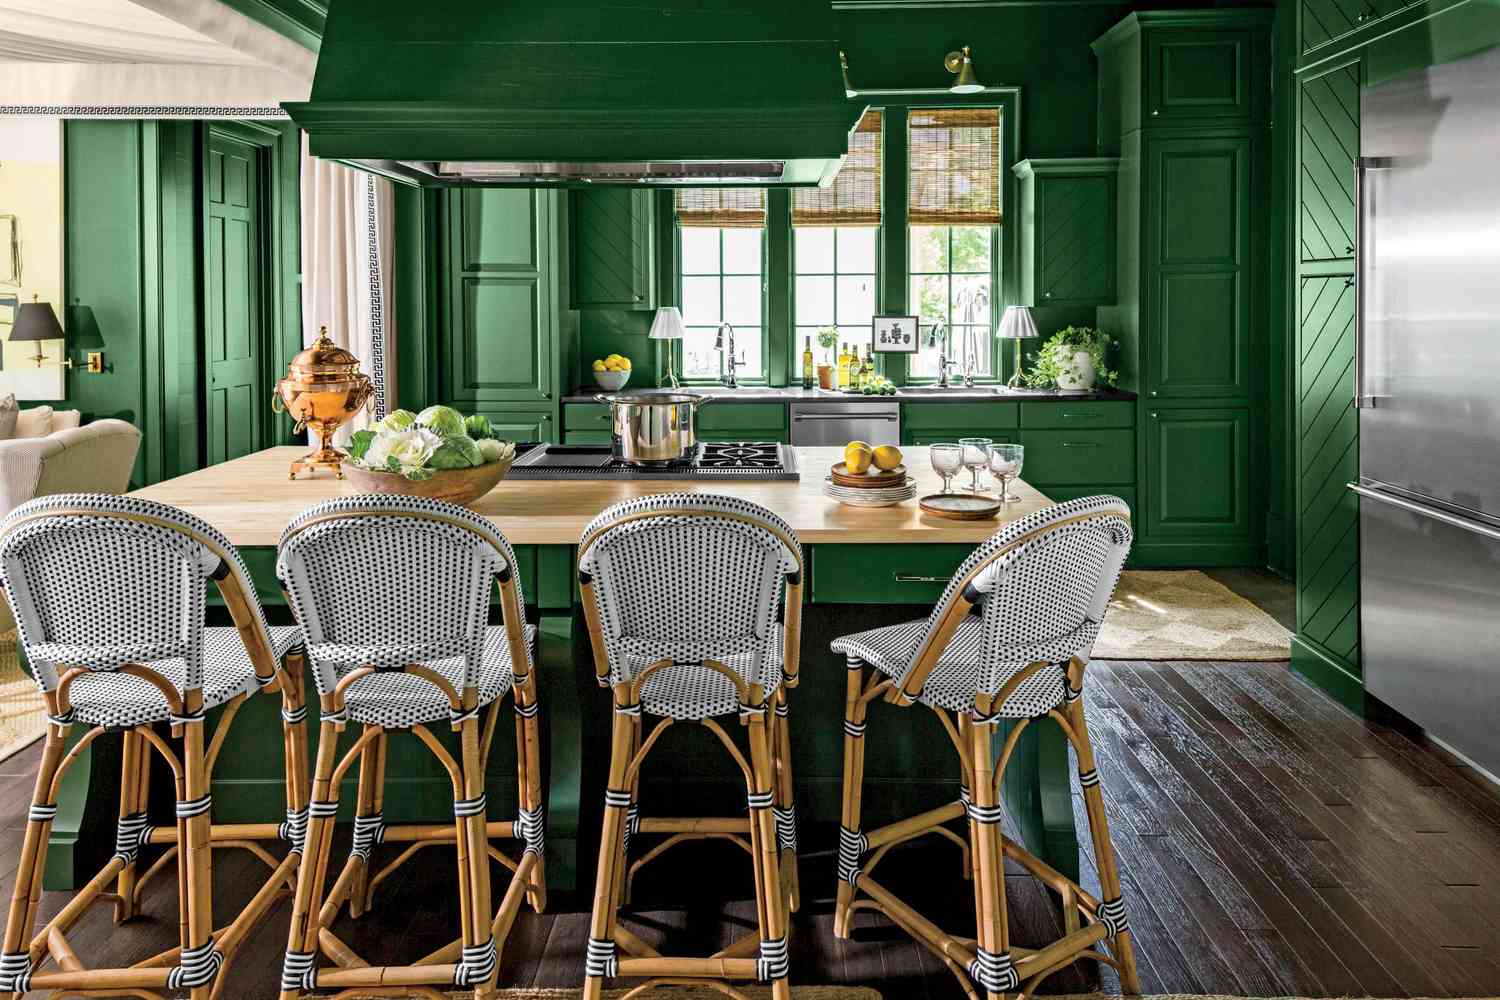 رنگ سبز برای کابینت بزرگ آشپزخانه لاکچری